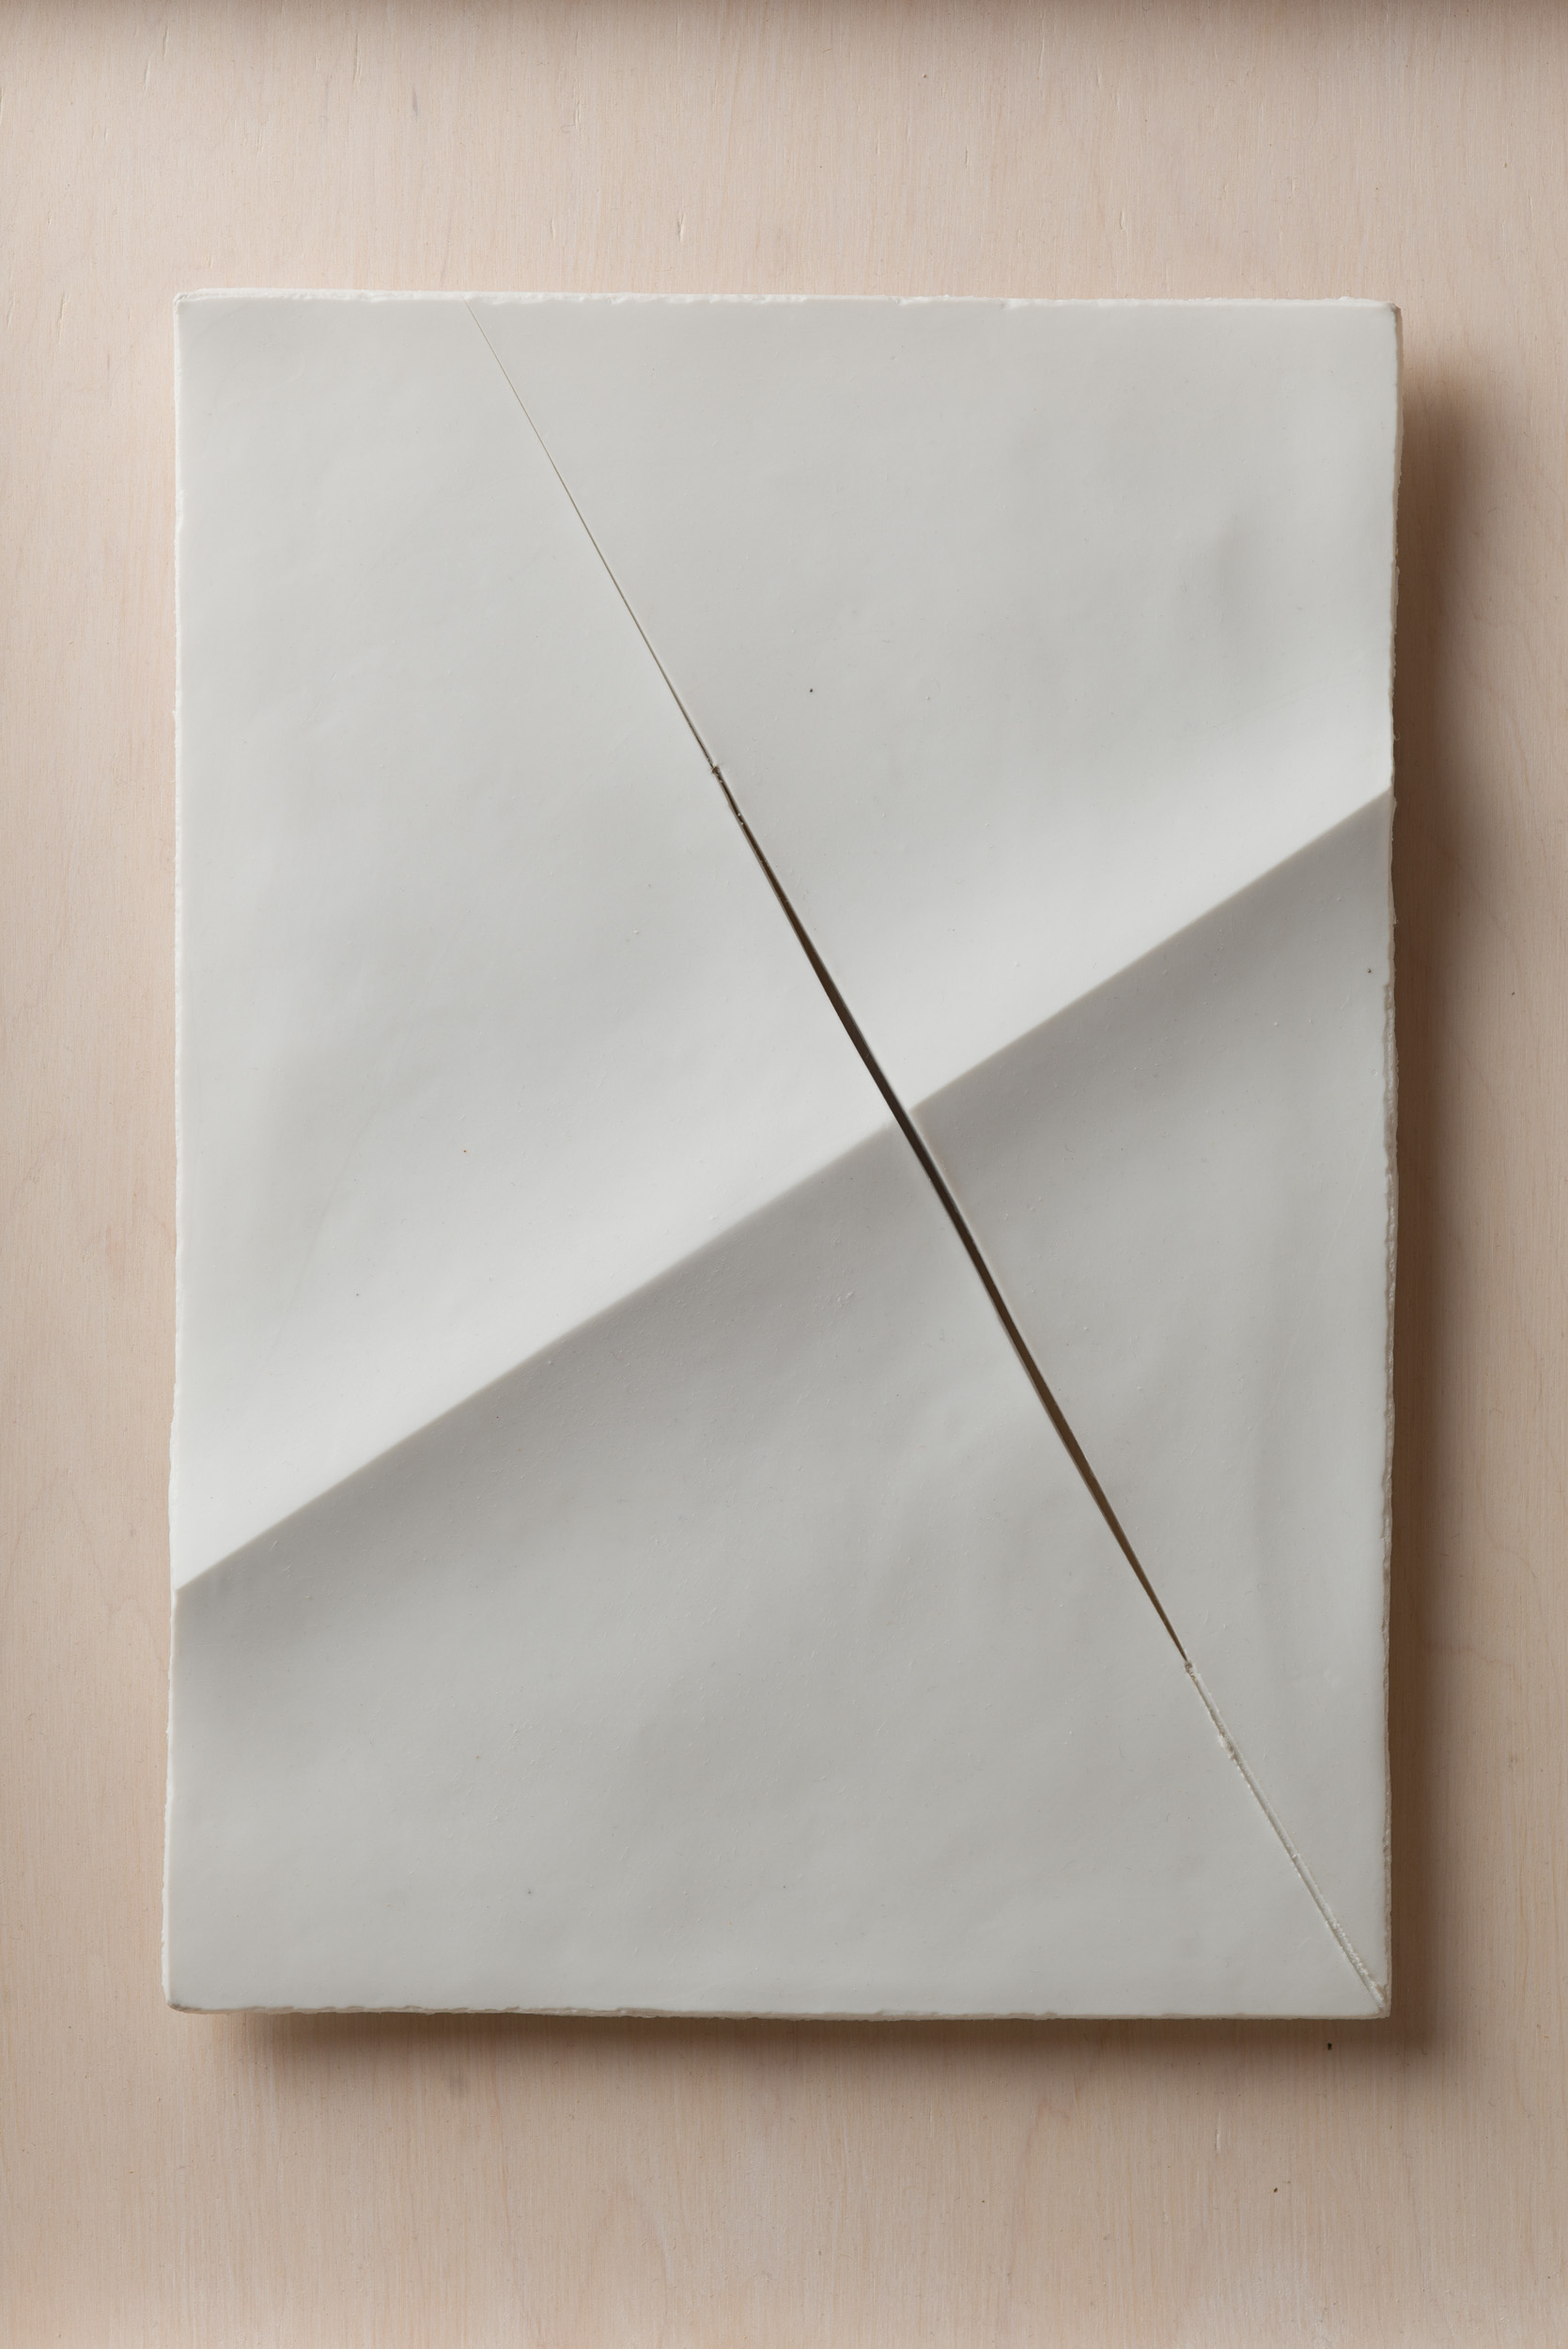 NÉMA Júlia: A4 I/III (2019) papírporcelán / paperporcelain 18,5 x 26 cm (31,6 x 38,6 x 3,5 cm) fotó: Czigány Ákos